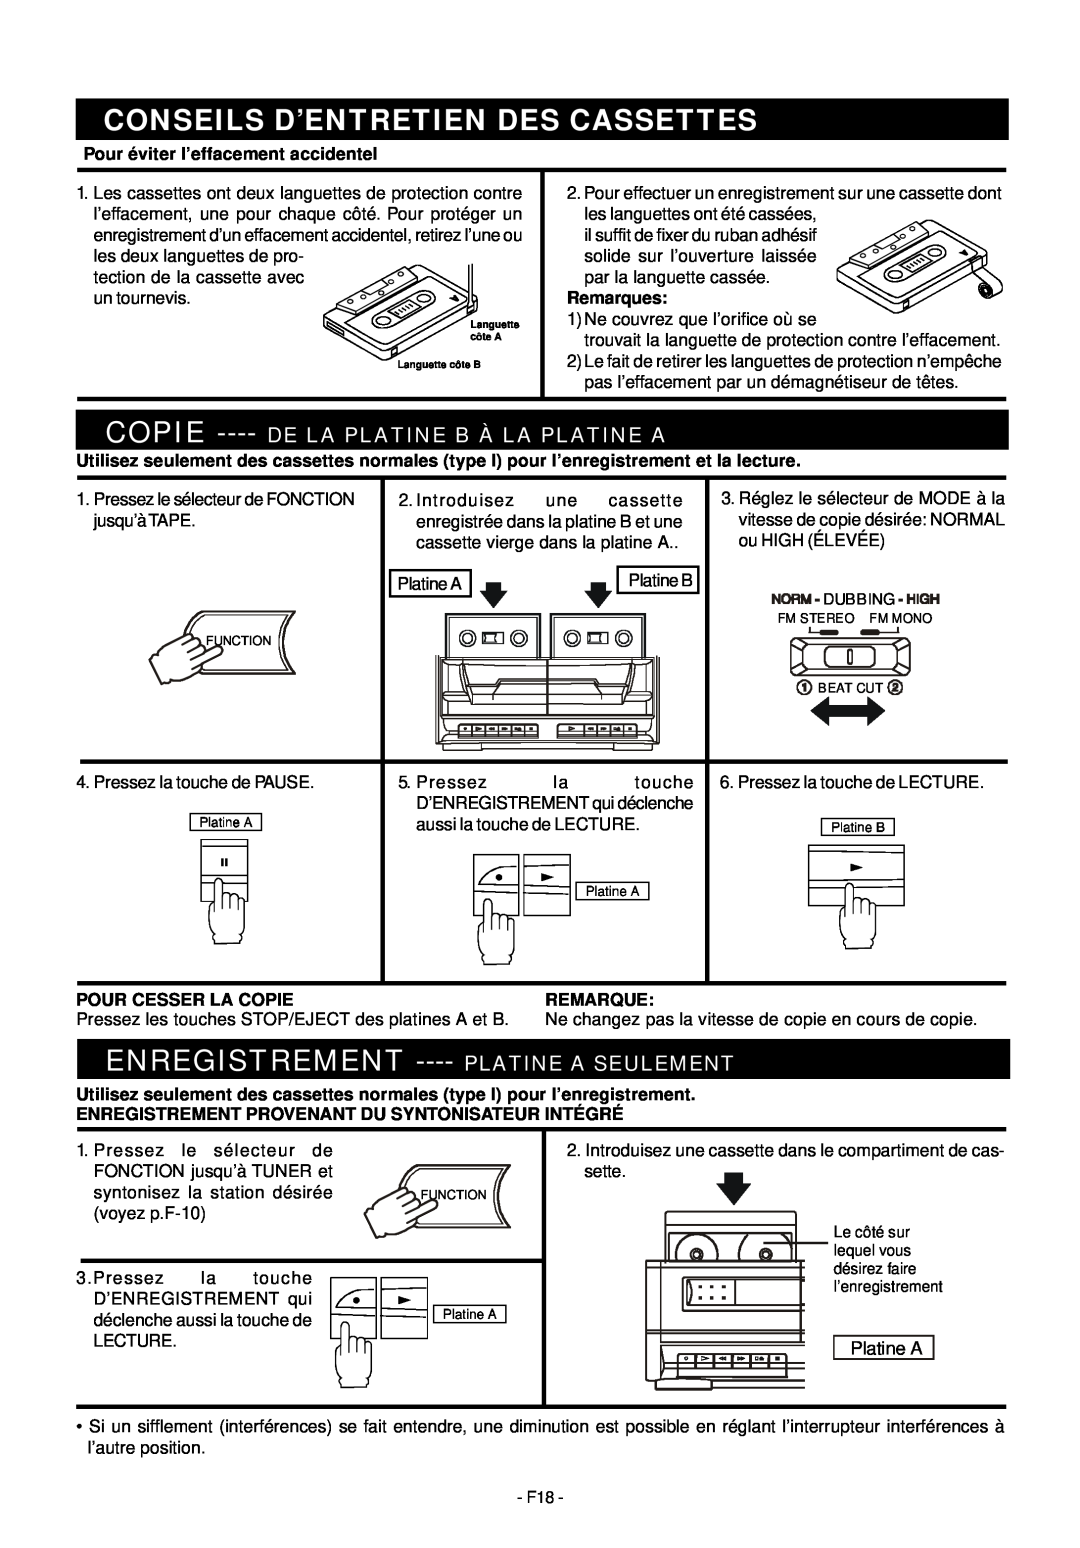 Audiovox Mini Hi-Fi System manual Conseils D’Entretien Des Cassettes, Enregistrement ---- Platine A Seulement, Remarques 